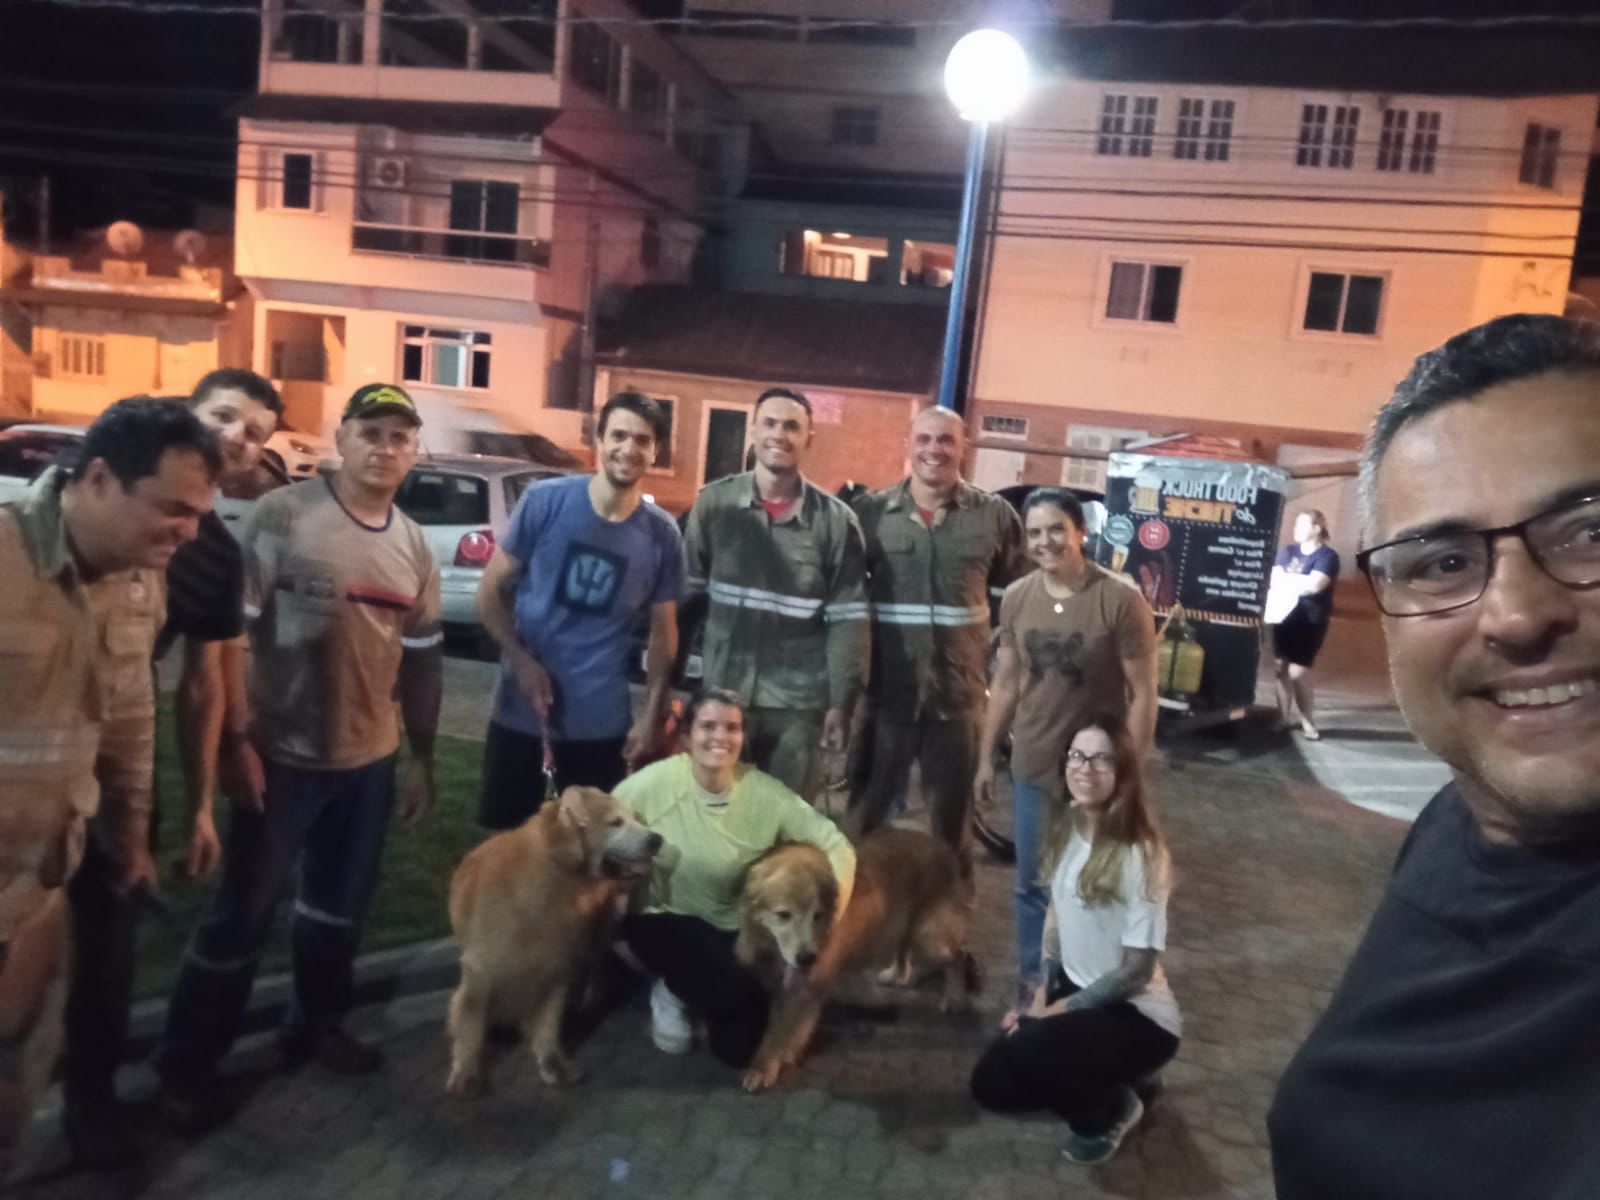 O resgate de dois cachorros em uma mata mobilizou voluntários em Domingos Martins